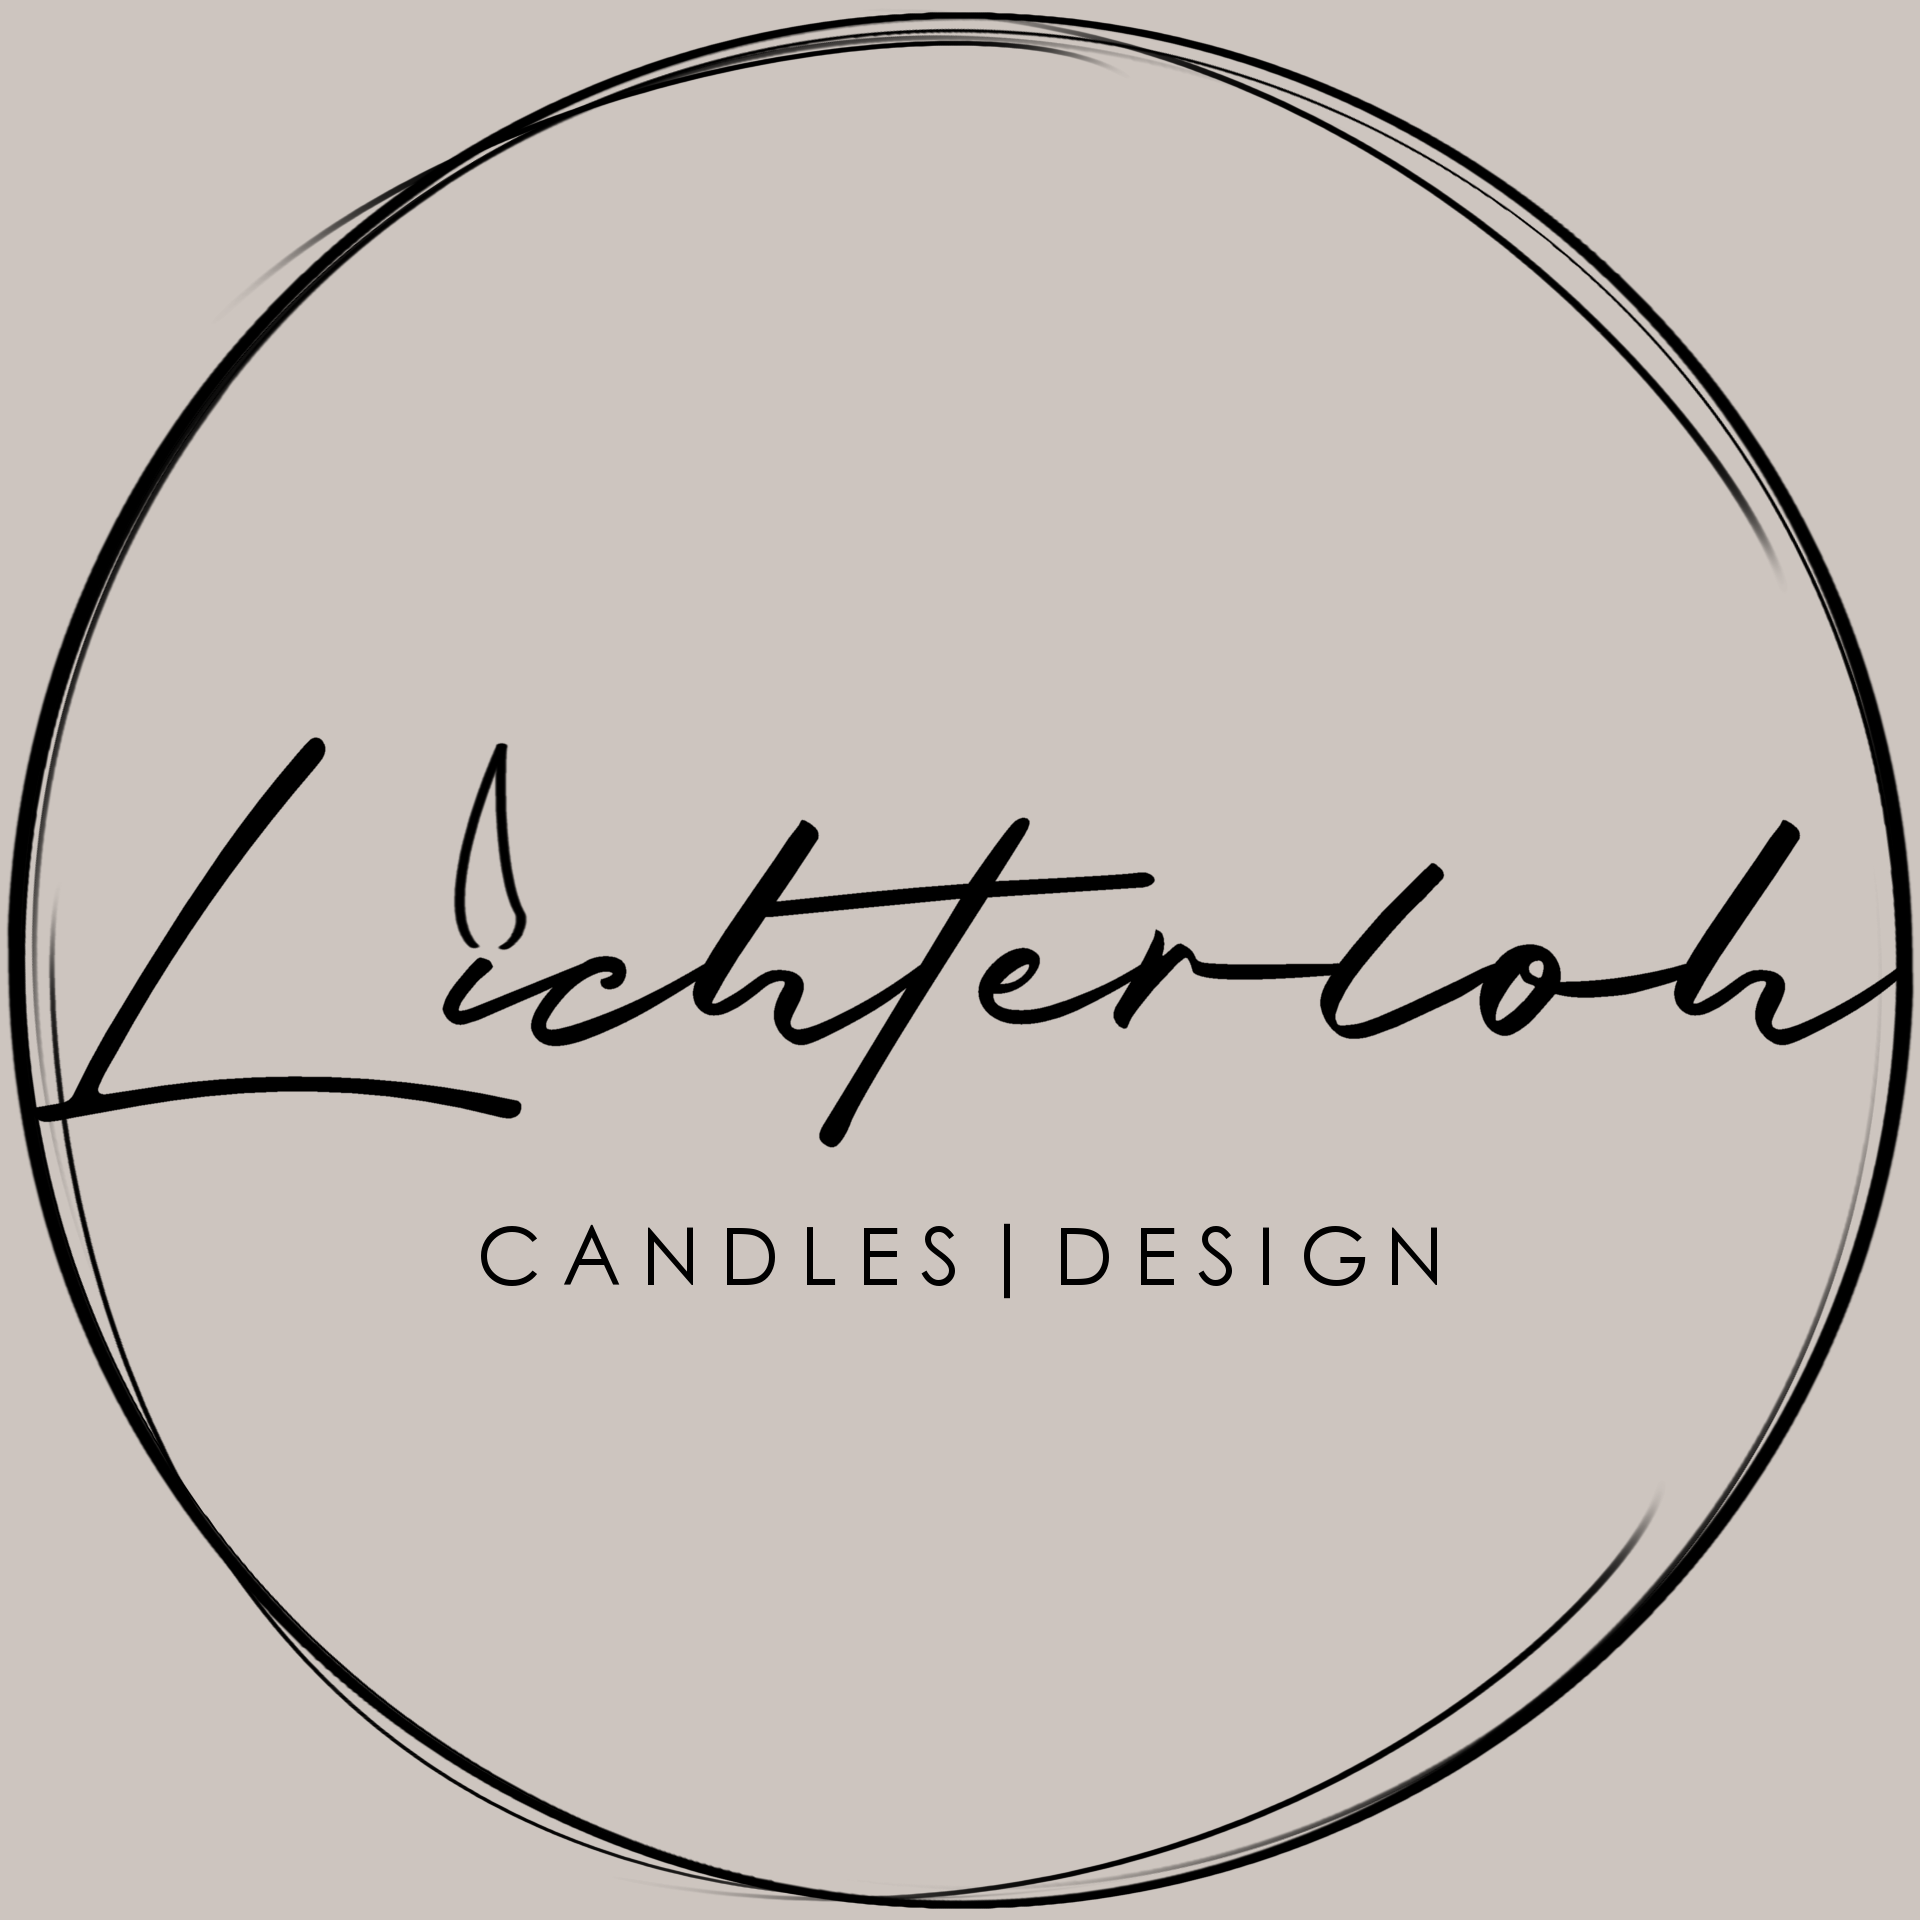 Lichterloh Candles|Design